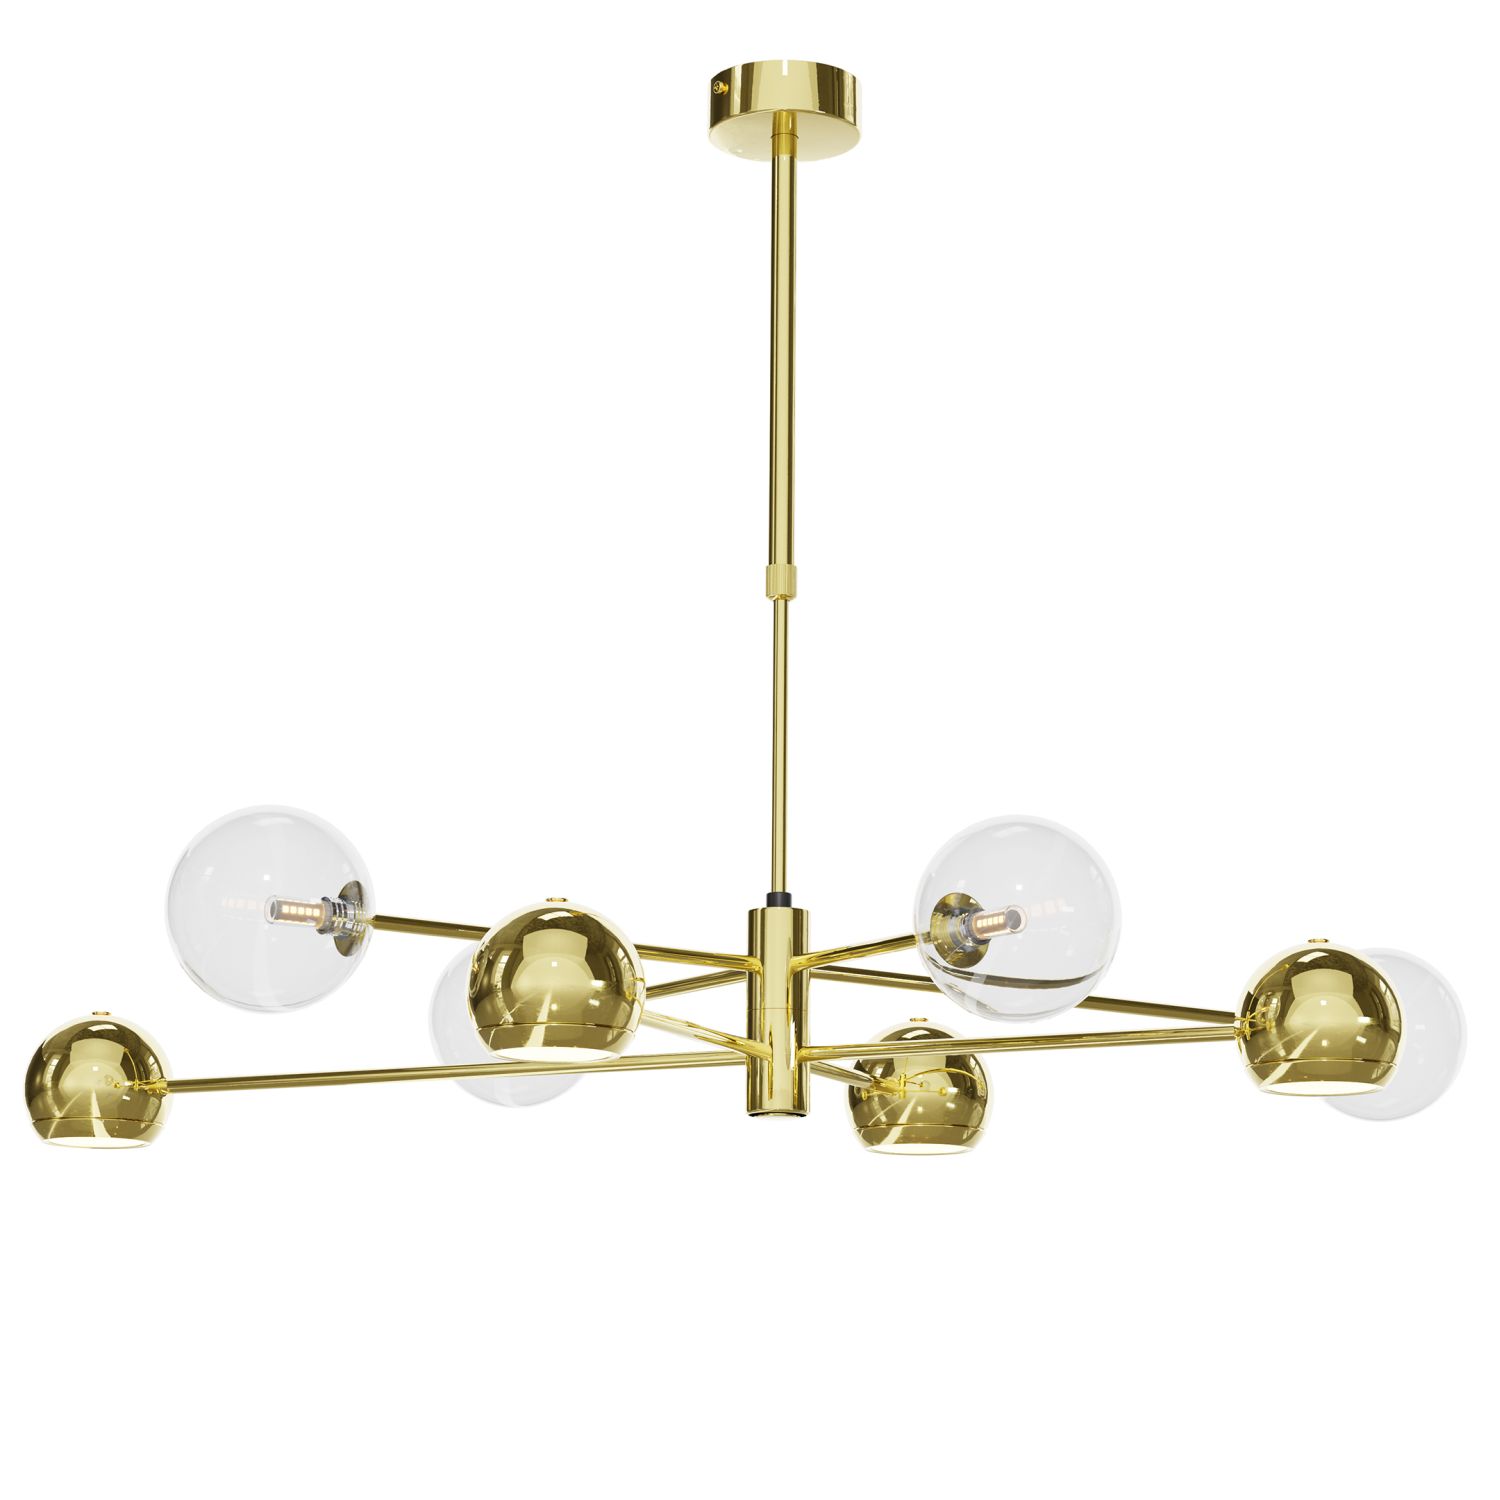 Stilvolle Deckenlampe in Gold 100 cm G9 GU10 elegant